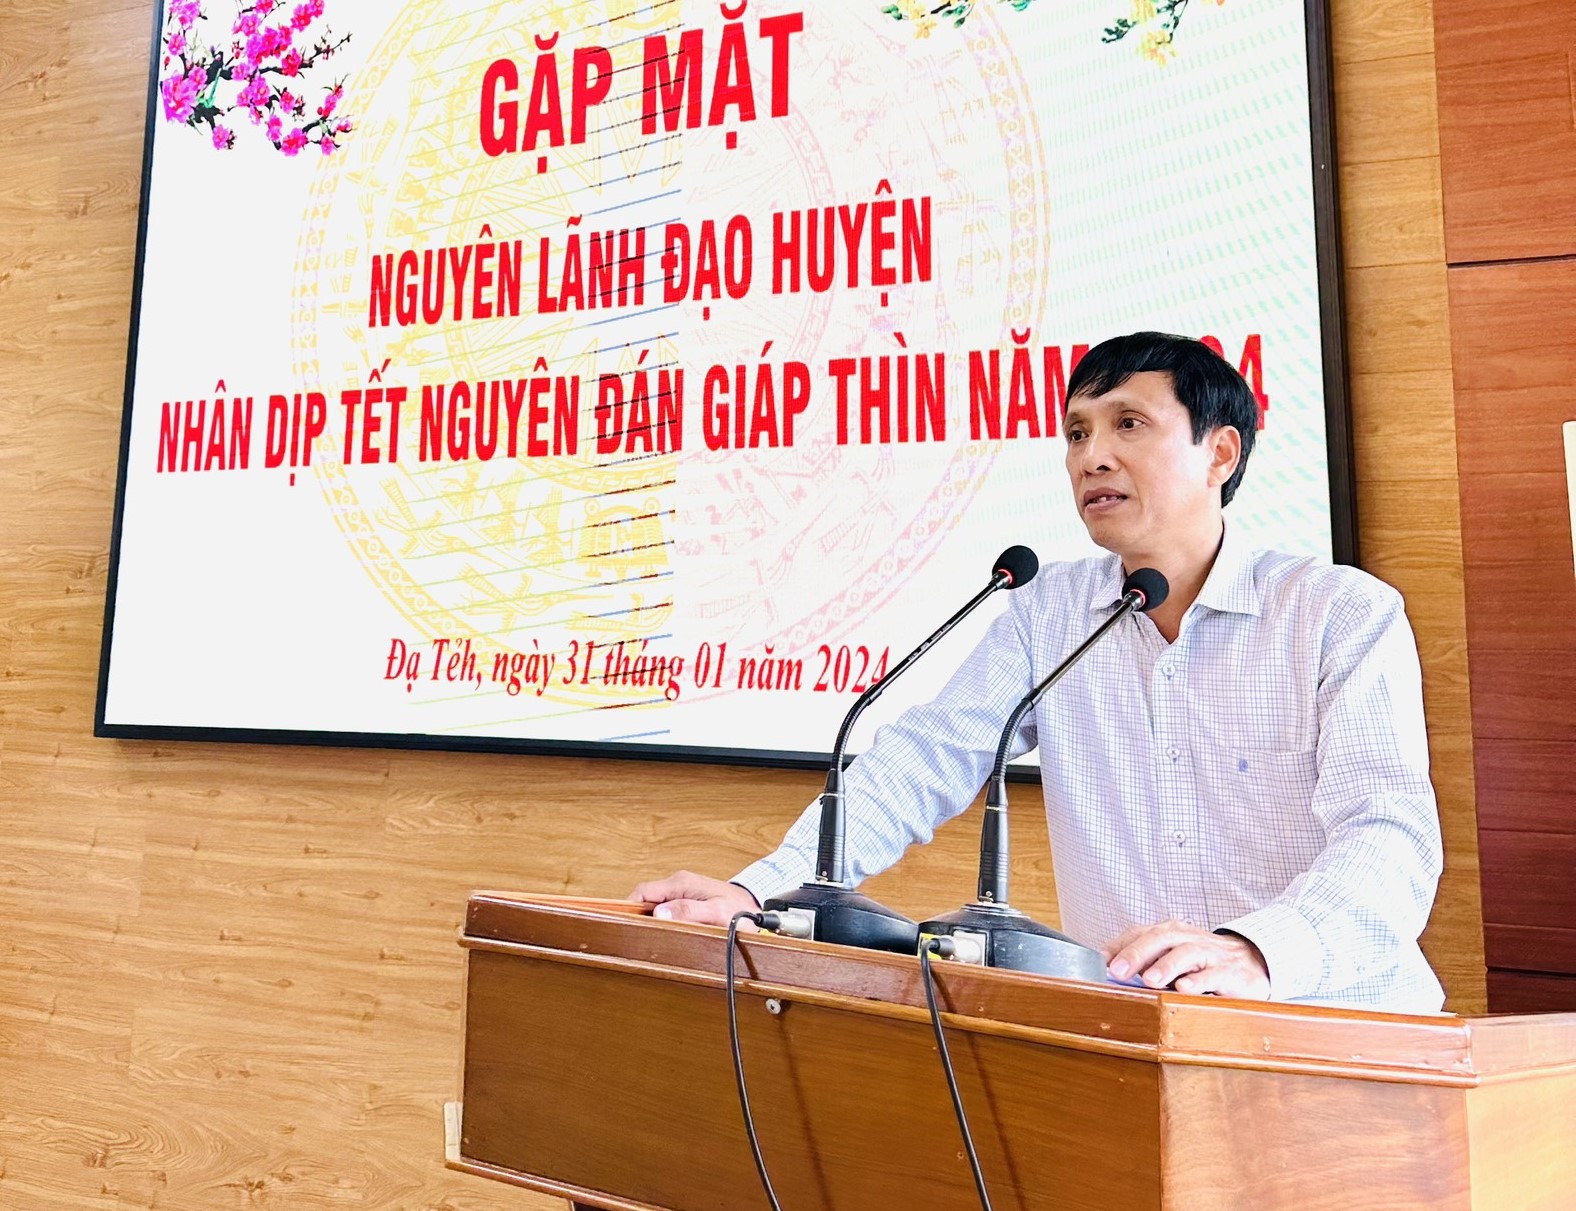 Đồng chí Nguyễn Mạnh Việt - Bí thư Huyện ủy Đạ Tẻh phát biểu tại buổi gặp mặt 